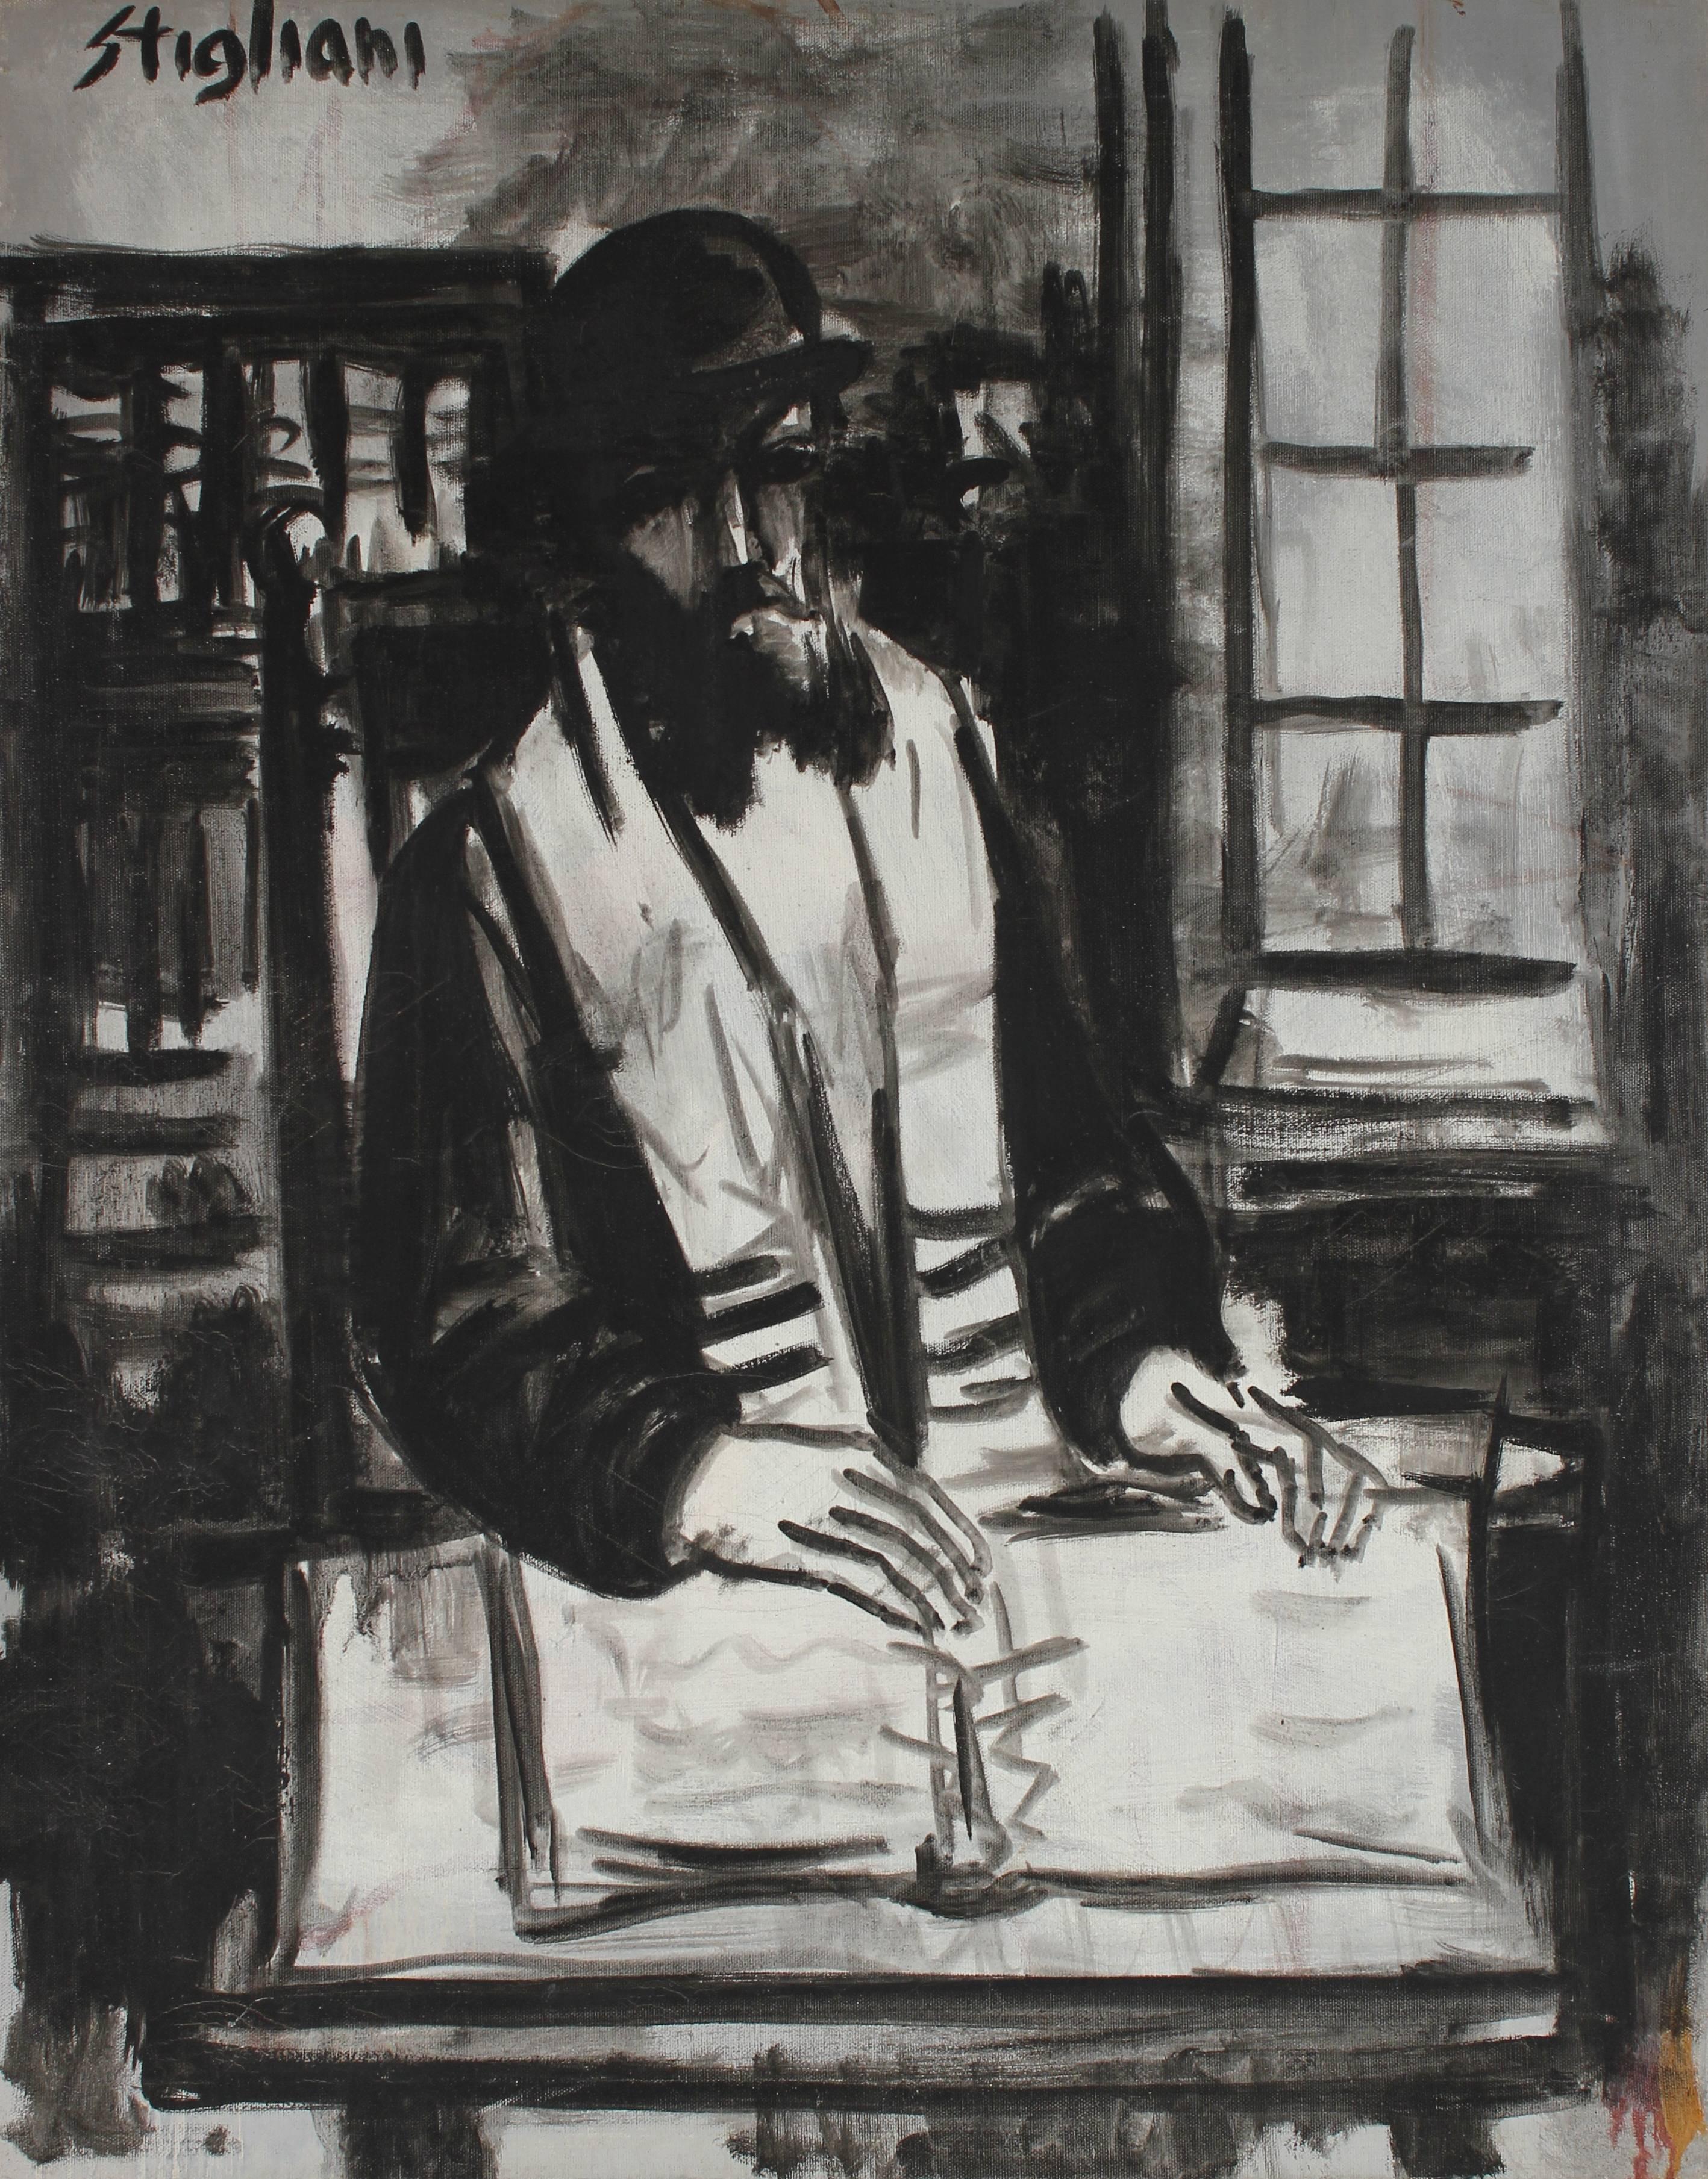 Pasquale Patrick Stigliani Portrait Painting - "The Rabbi", Monochromatic Portrait in Oil